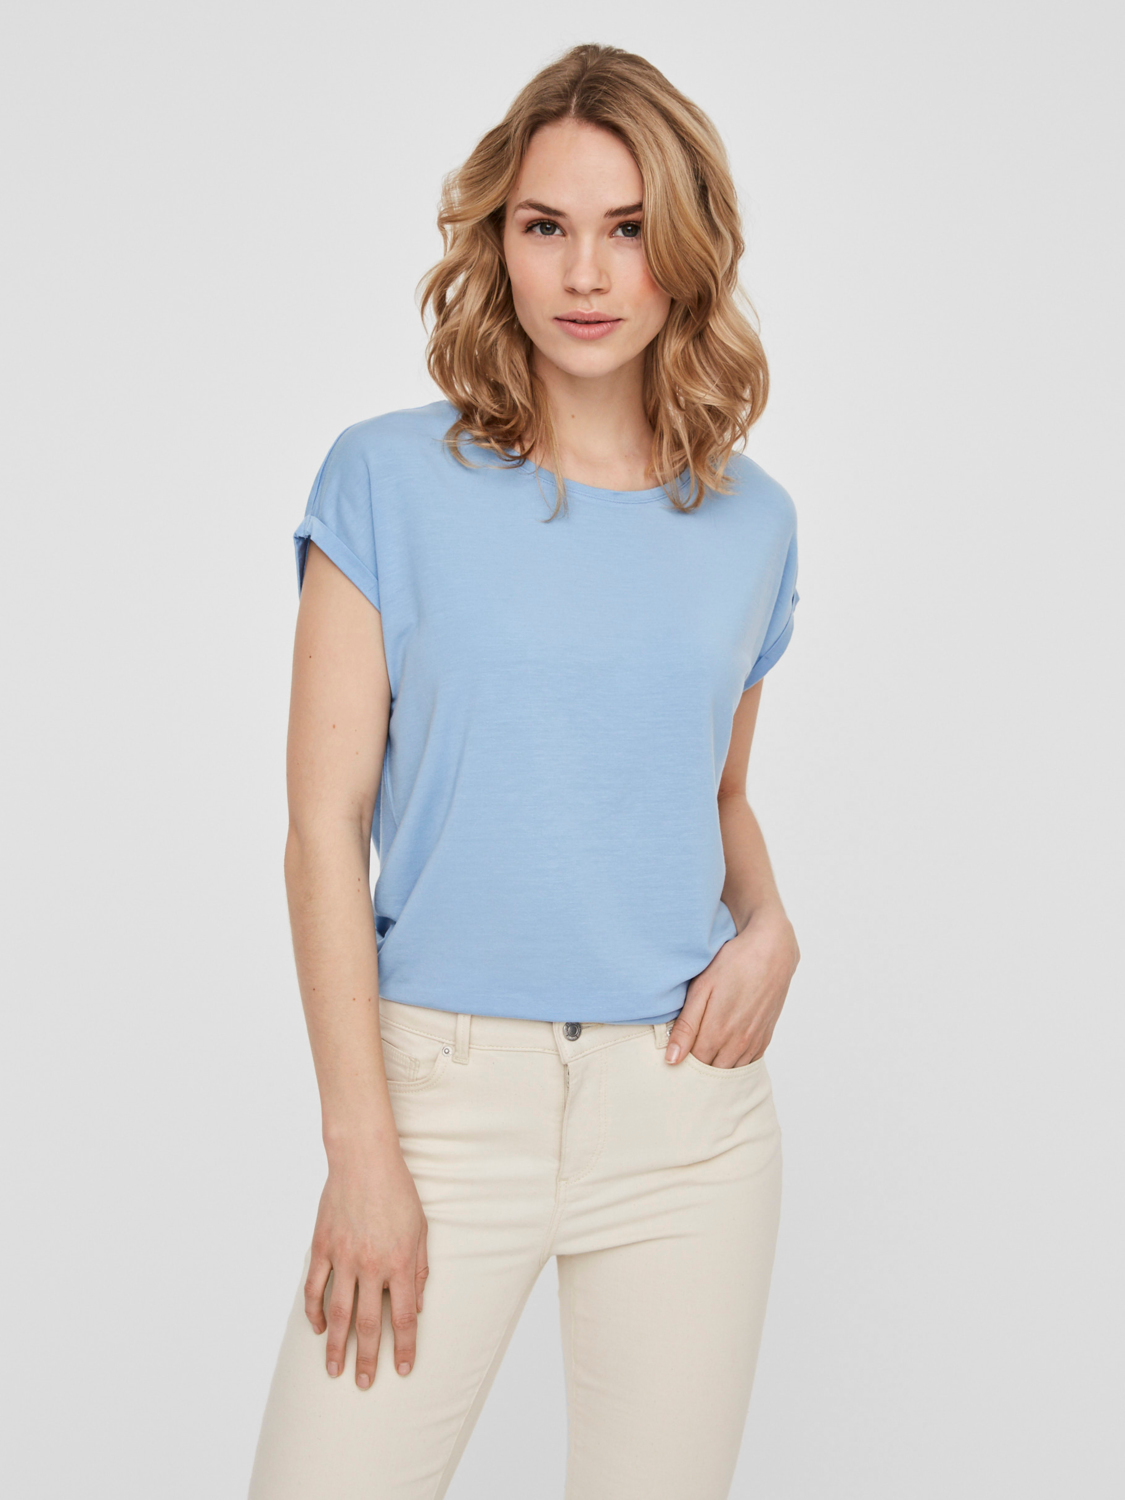 AWARE | Ava T-Shirt, PLACID BLUE, large